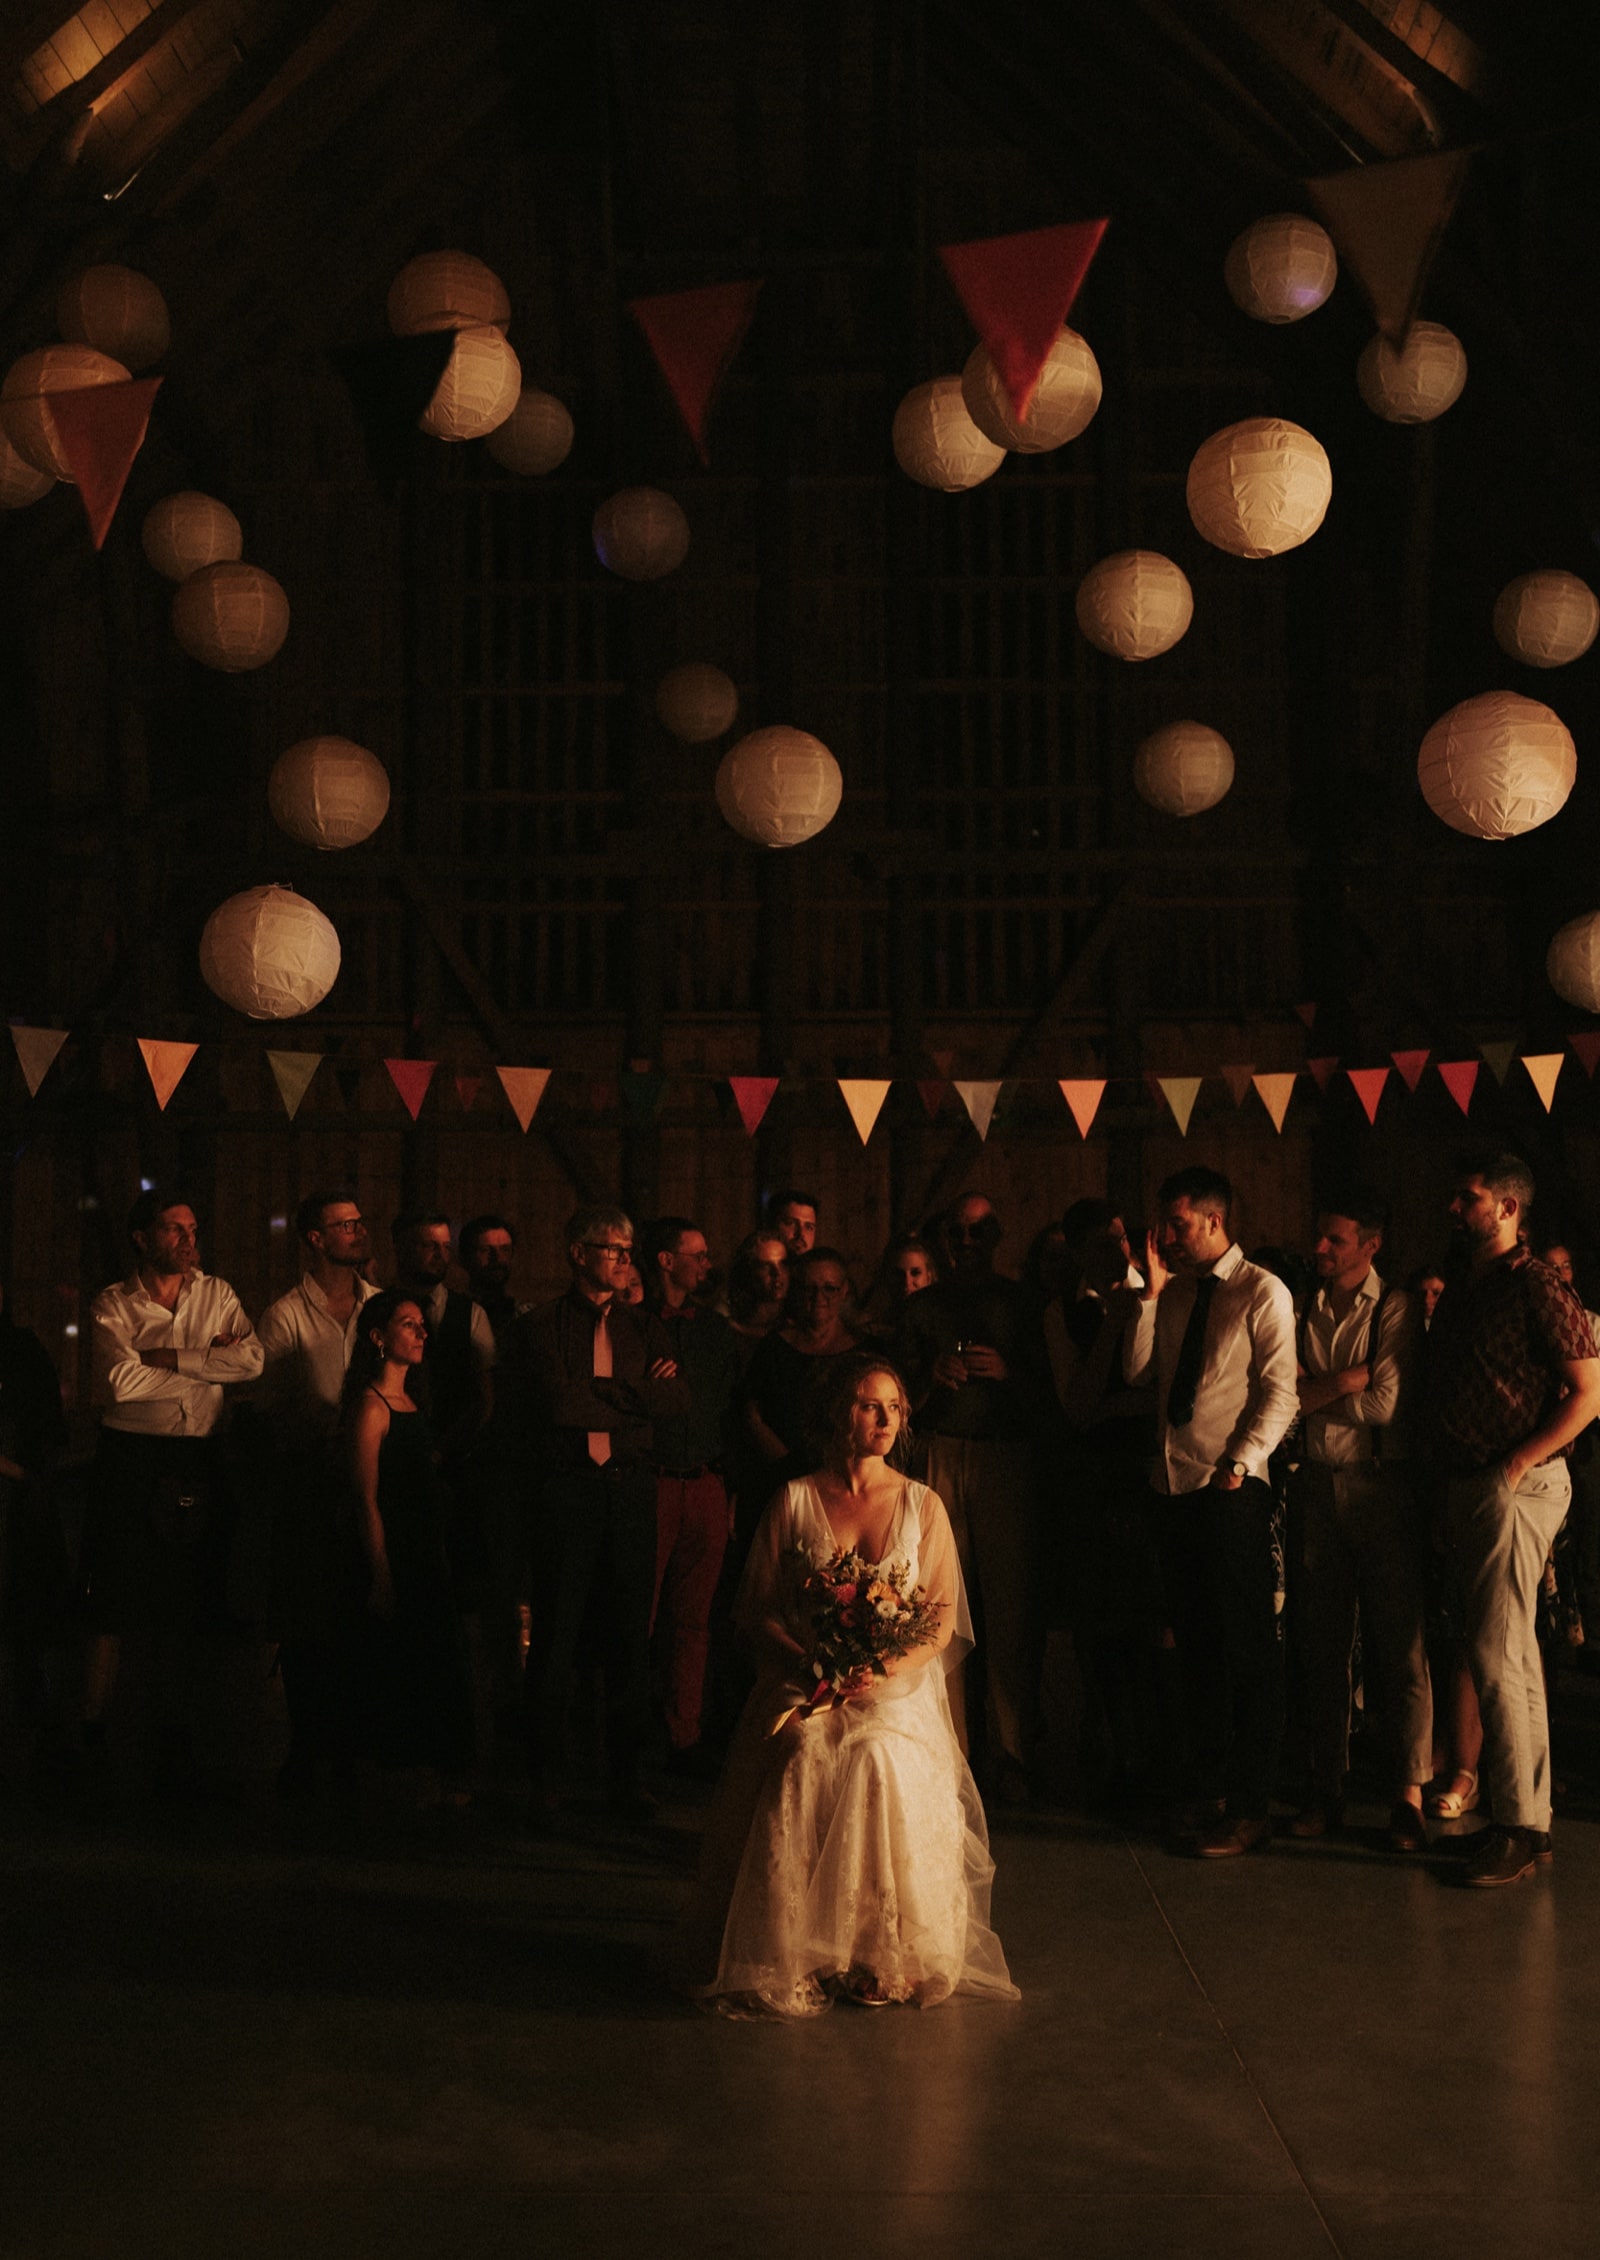 Stodoła poganty folwark noclegi ślub na mazurach najpiękniejsze miejsce para młoda sesja ślub jak midsommar